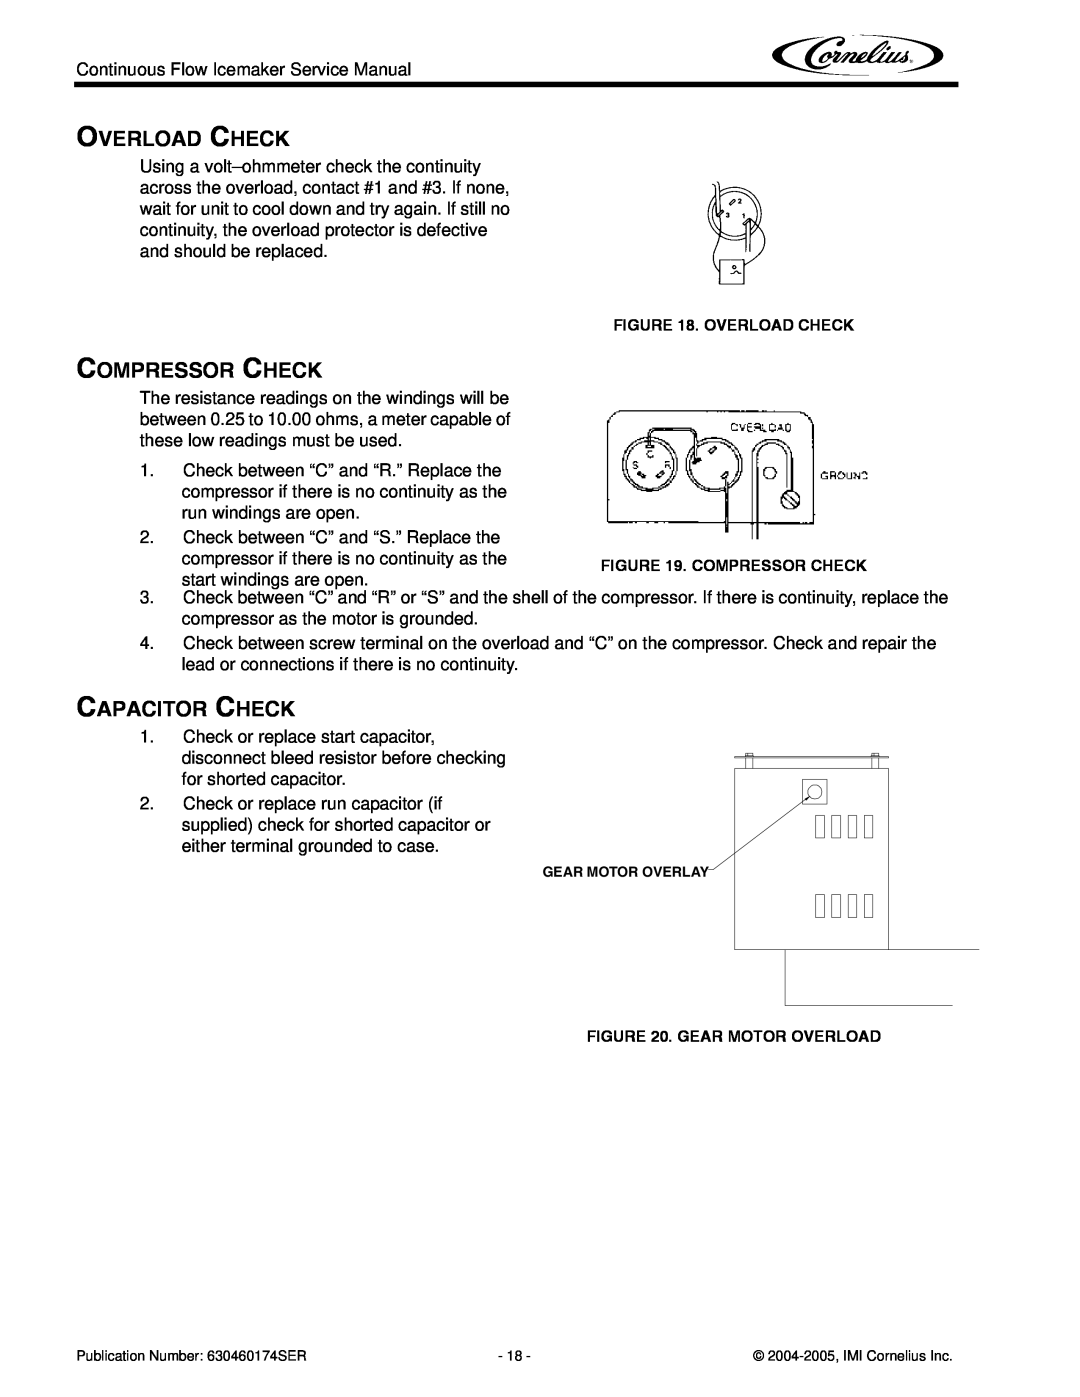 Cornelius 1000 service manual Overload Check, Compressor Check, Capacitor Check 